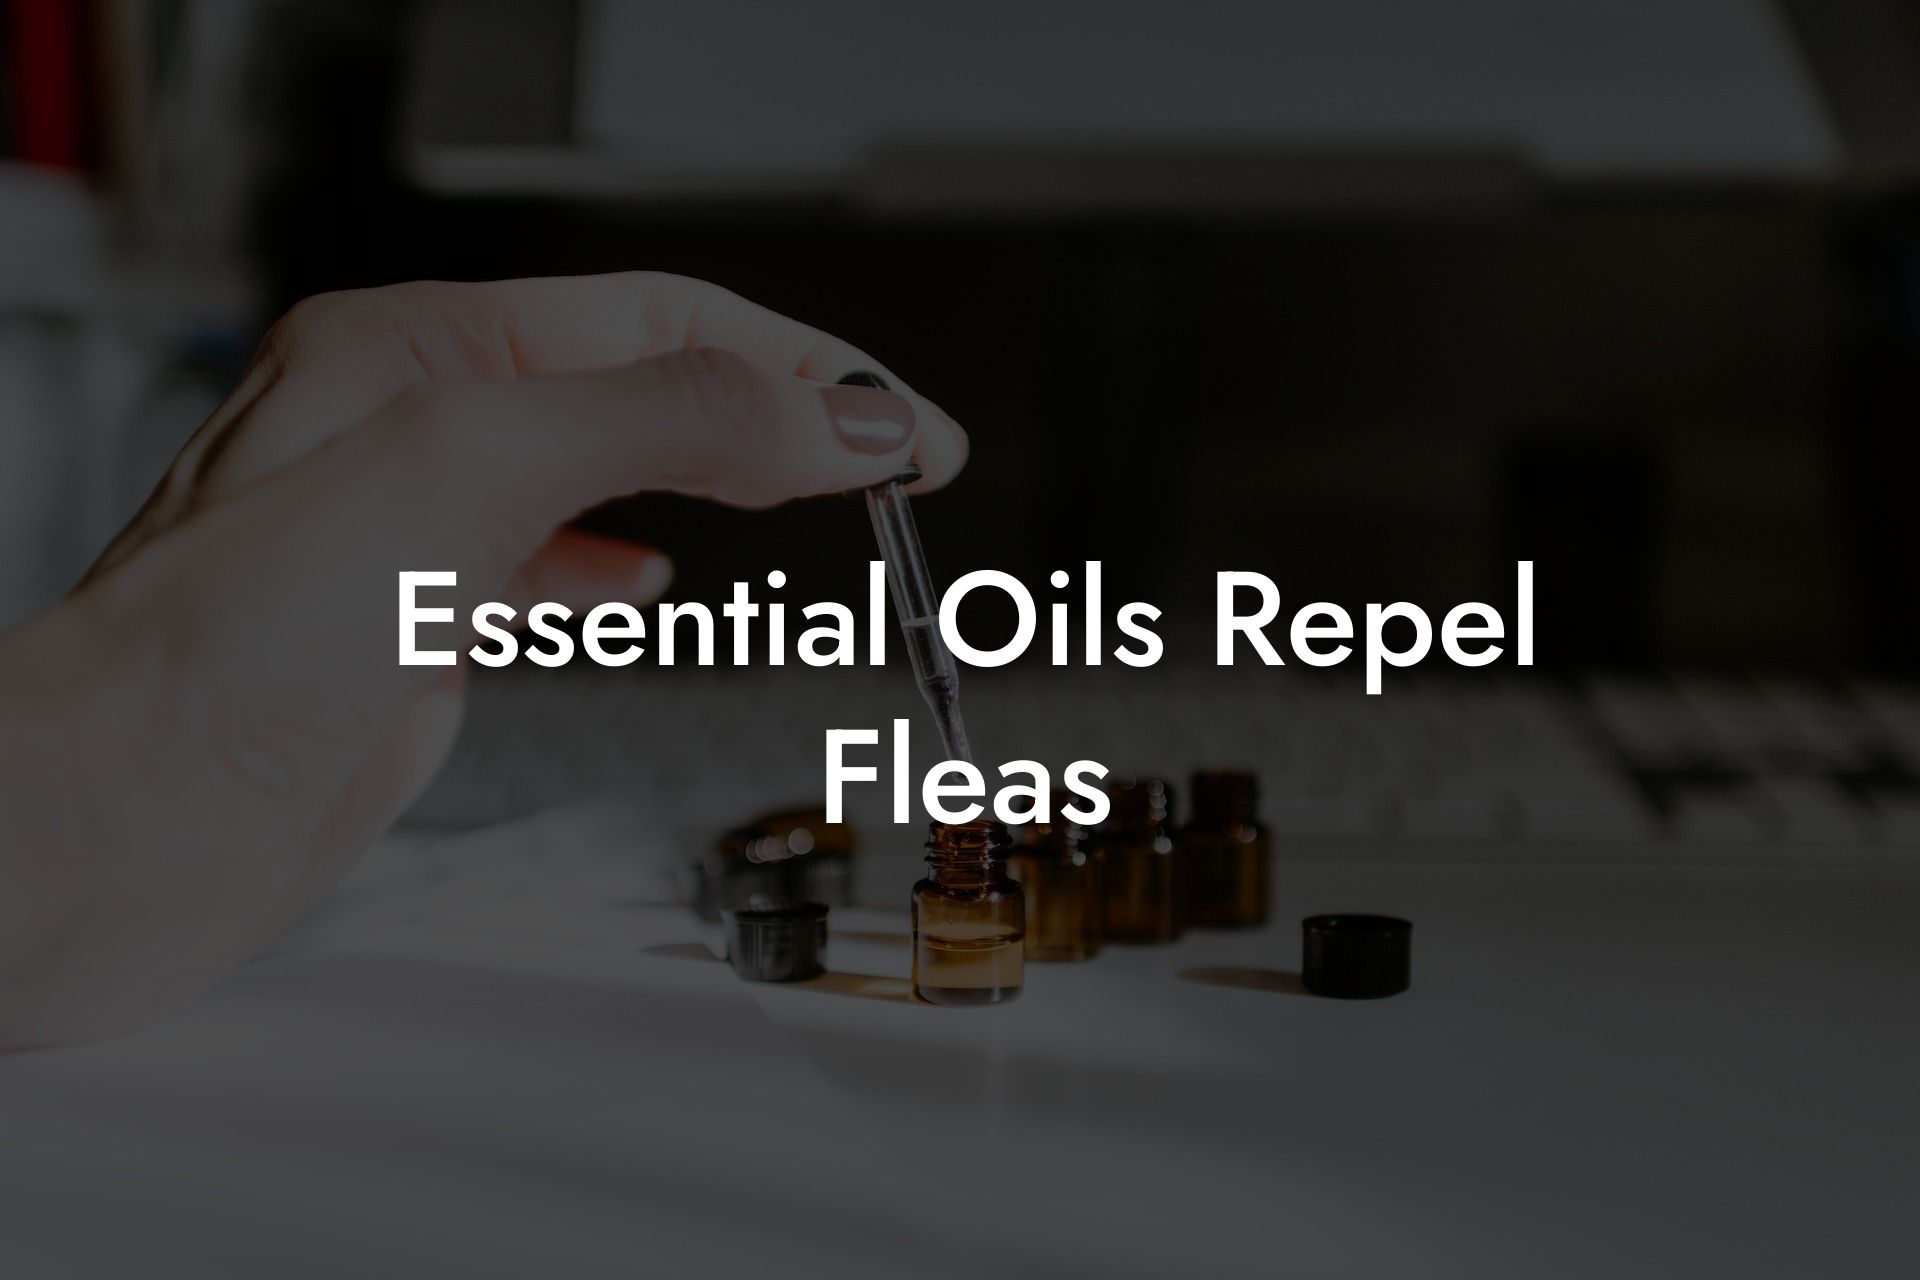 Essential Oils Repel Fleas